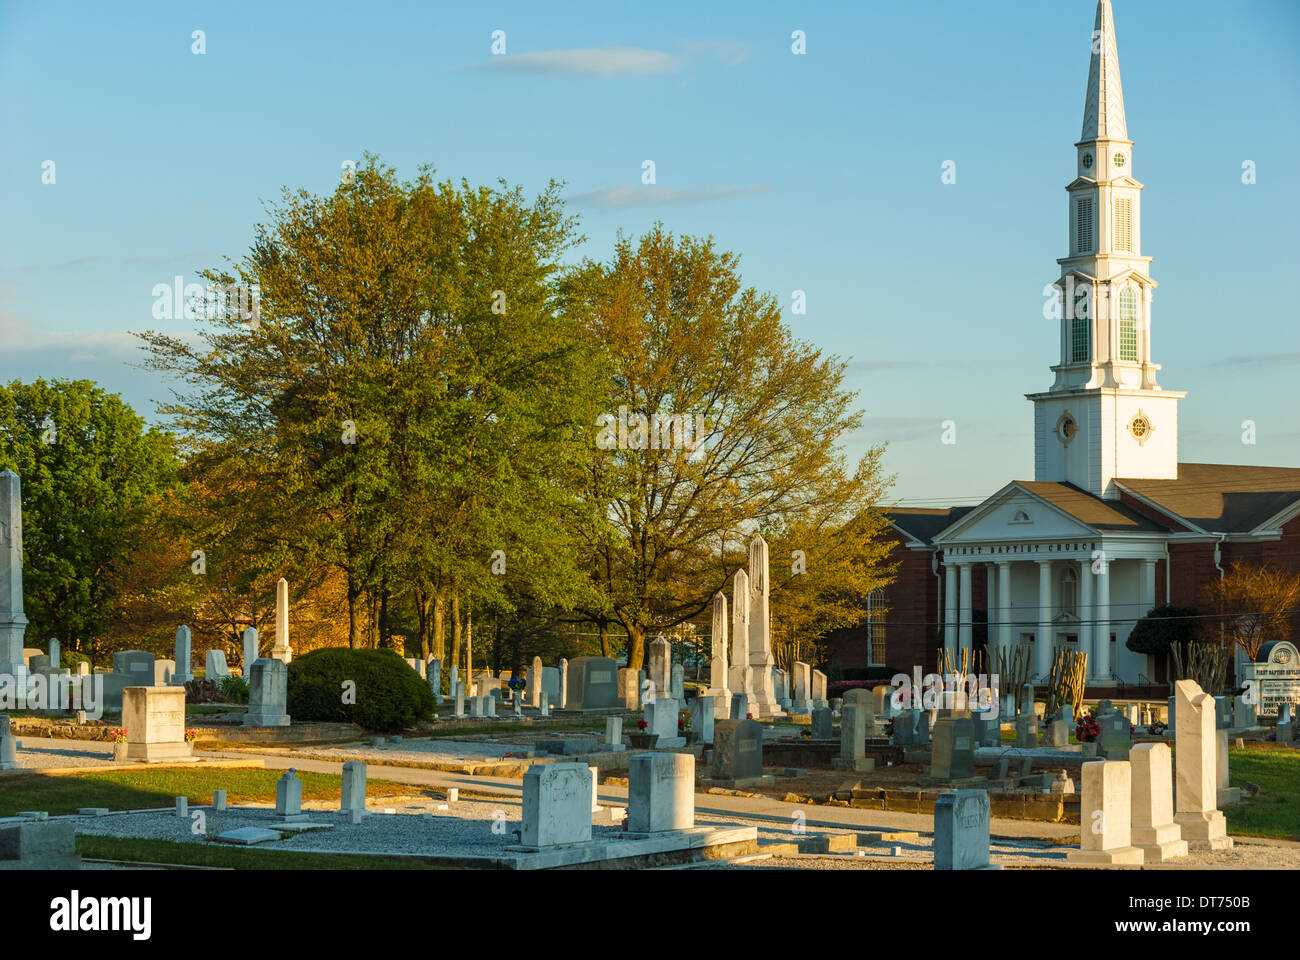 Un sole che tramonta mette in risalto i marcatori e i monoliti del cimitero storico di Snellville e della prima chiesa battista di Snellville, Georgia. (USA) Foto Stock